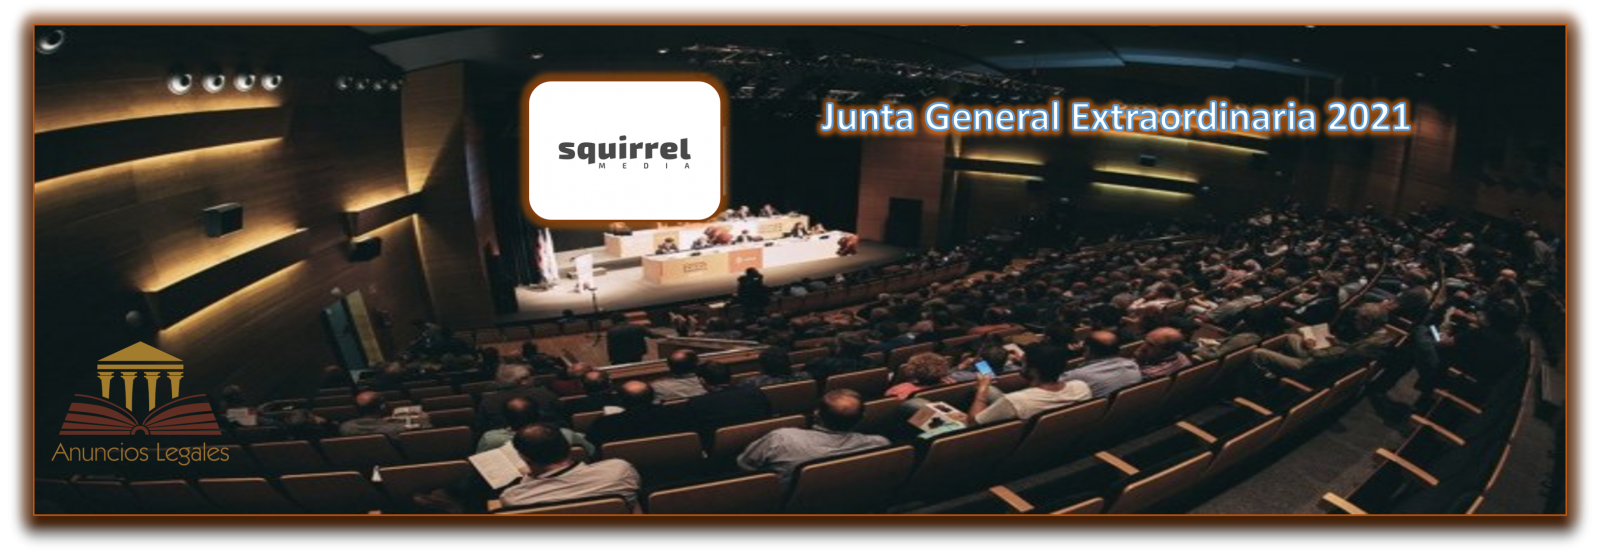 La sociedad Squirrel Media anuncia Junta General Extraordinaria de Accionistas 2021